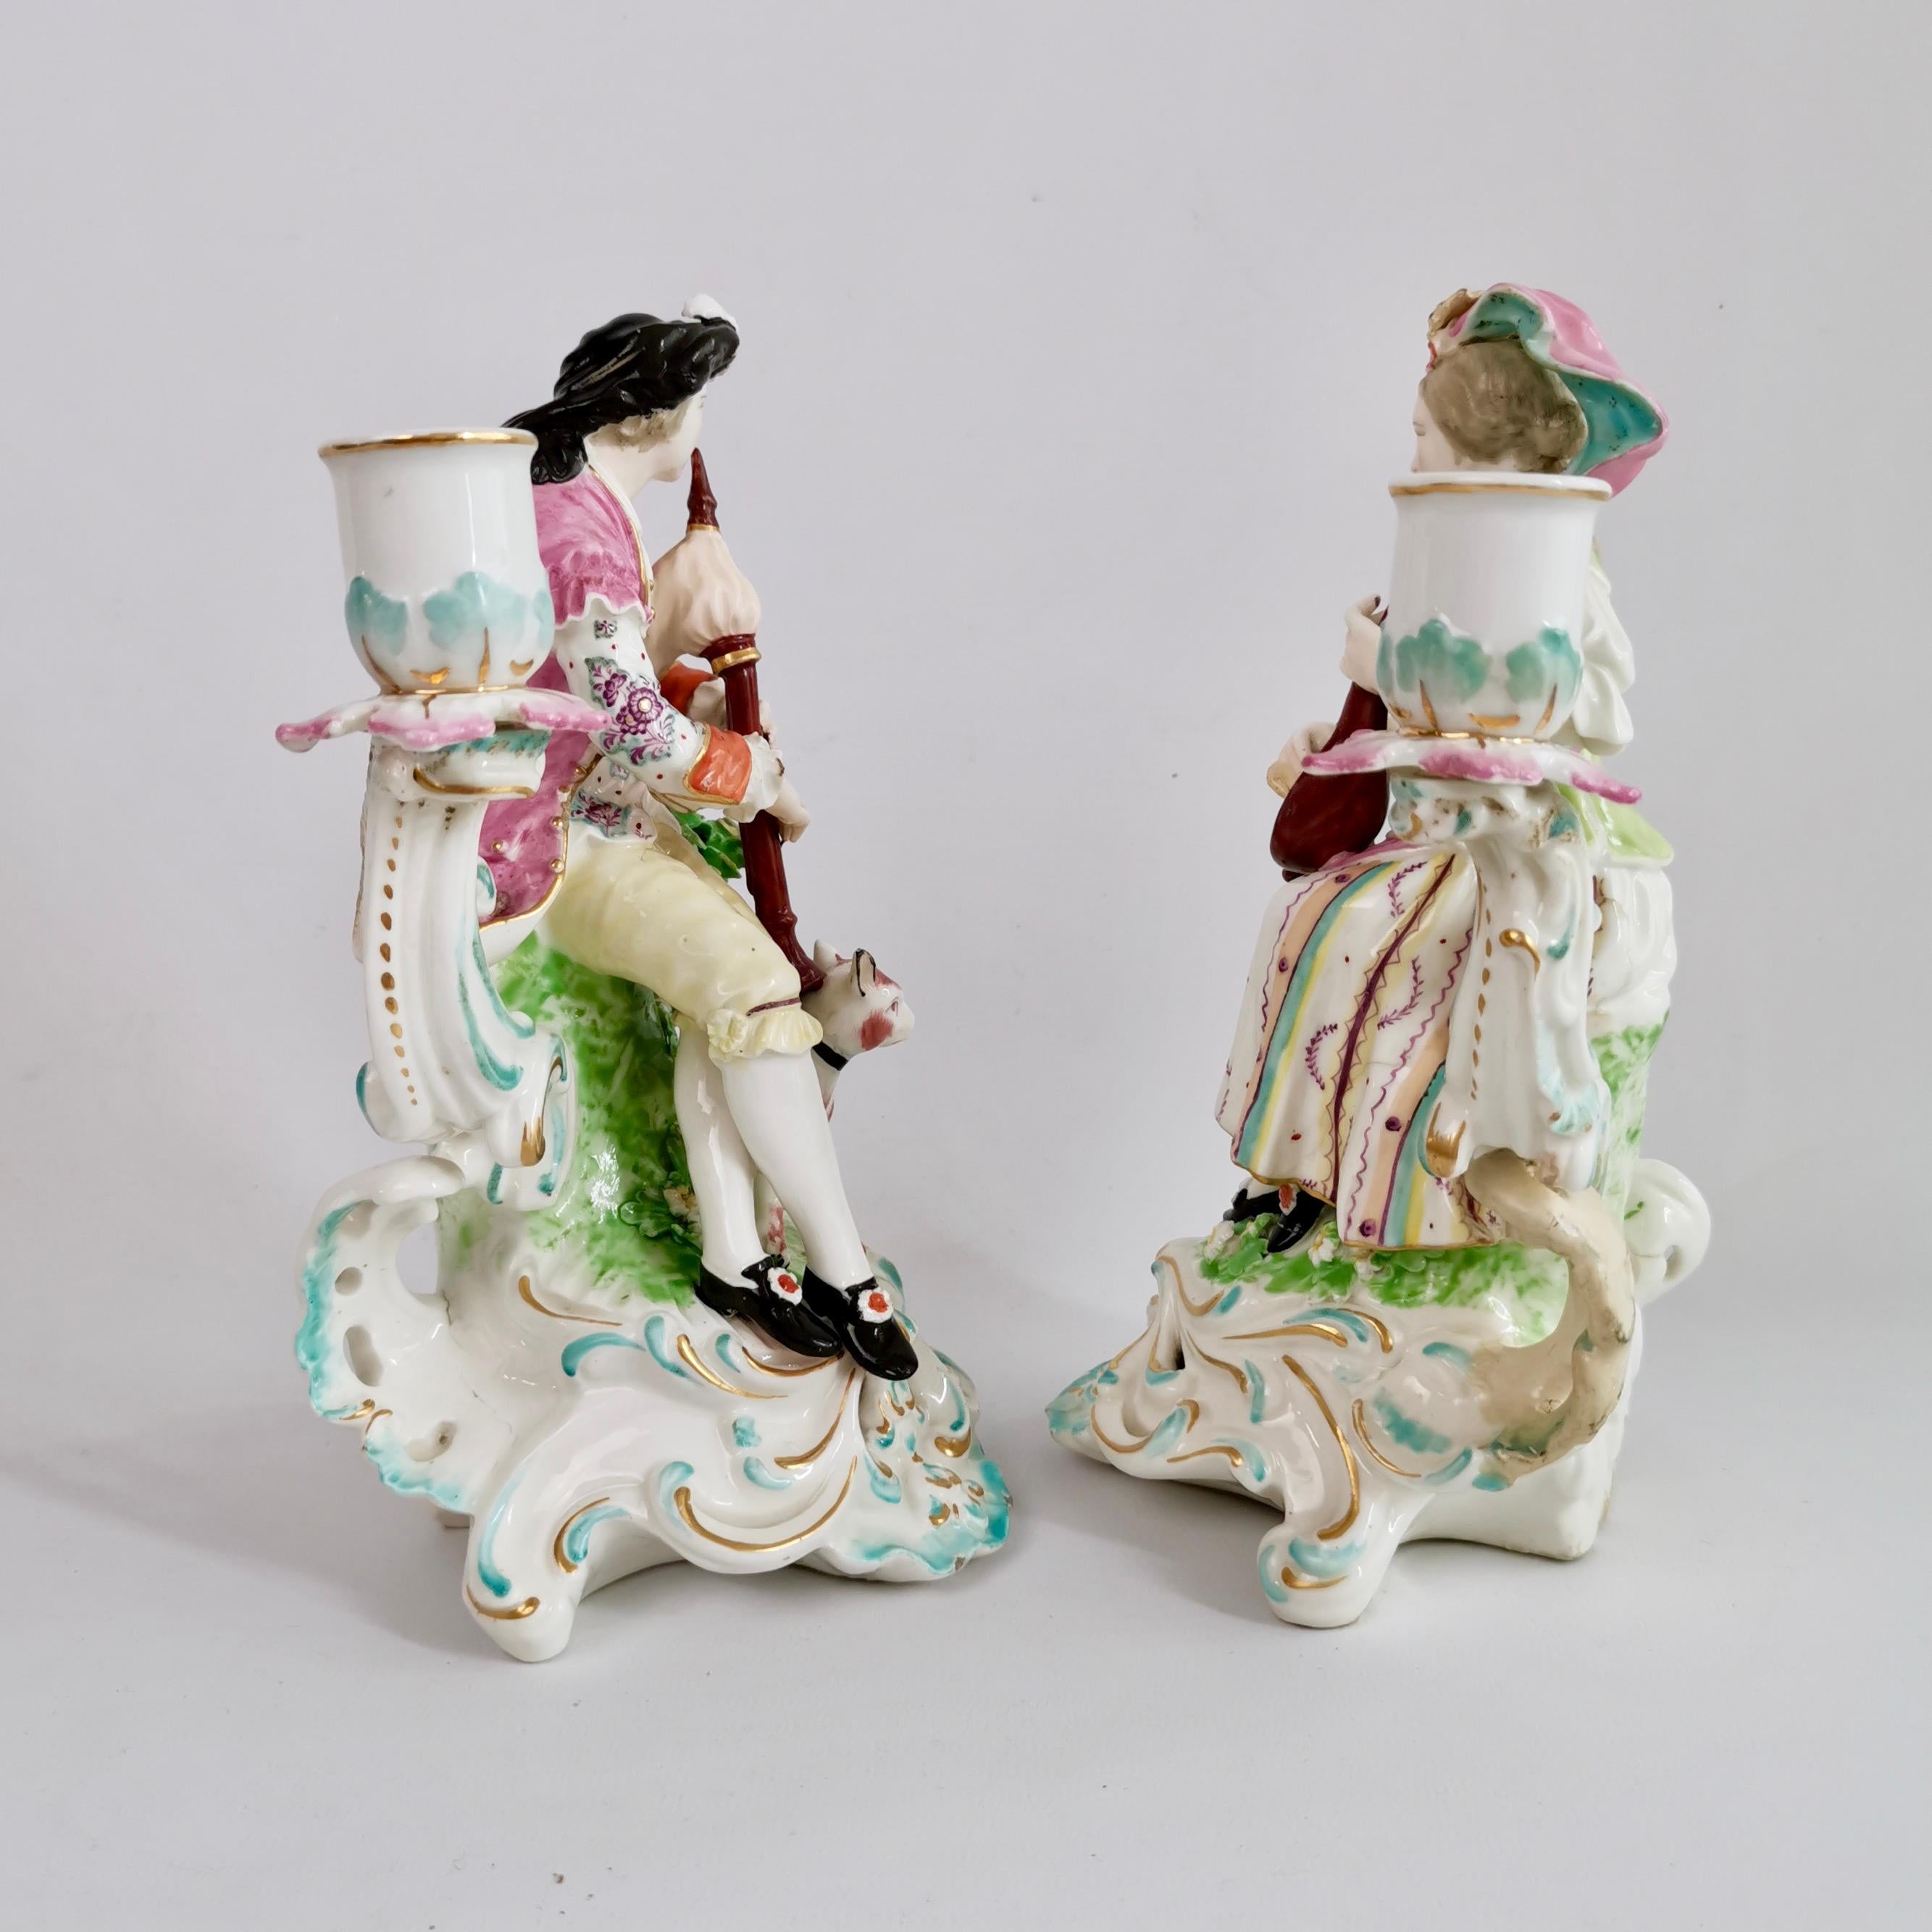 Il s'agit d'une magnifique paire de bougeoirs en porcelaine de Derby représentant un joueur de cornemuse et une dame au luth, fabriqués entre 1759 et 1769, époque du rococo. Cette paire est l'une des célèbres paires de figurines de Derby et cette